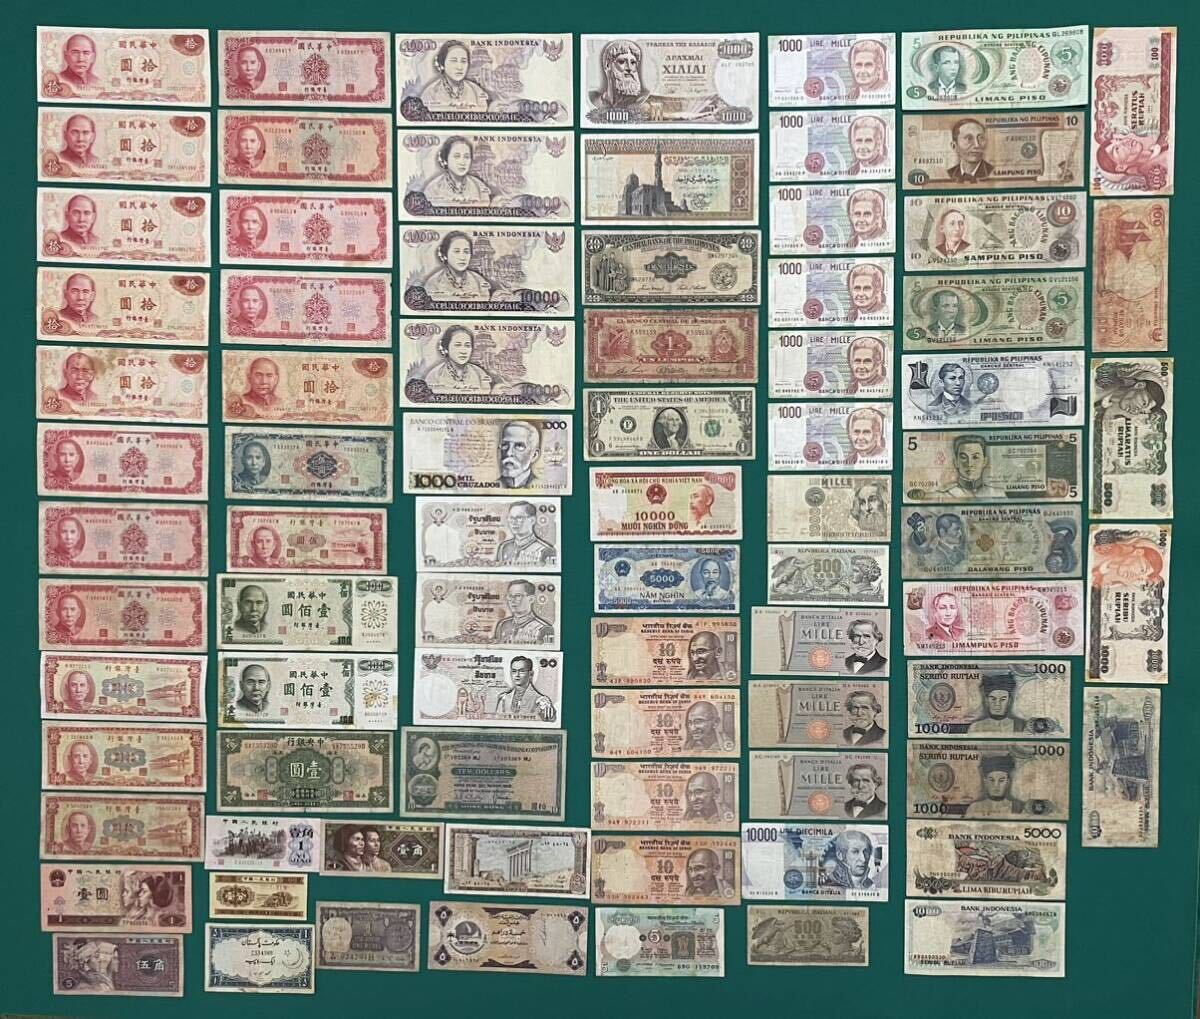 旧紙幣 世界の紙幣 外国紙幣 台湾、中国、タイ、香港、ベトナム、インド、イタリア、フィリピン紙幣など 81枚枚まとめ 大量 1円スタート_画像1